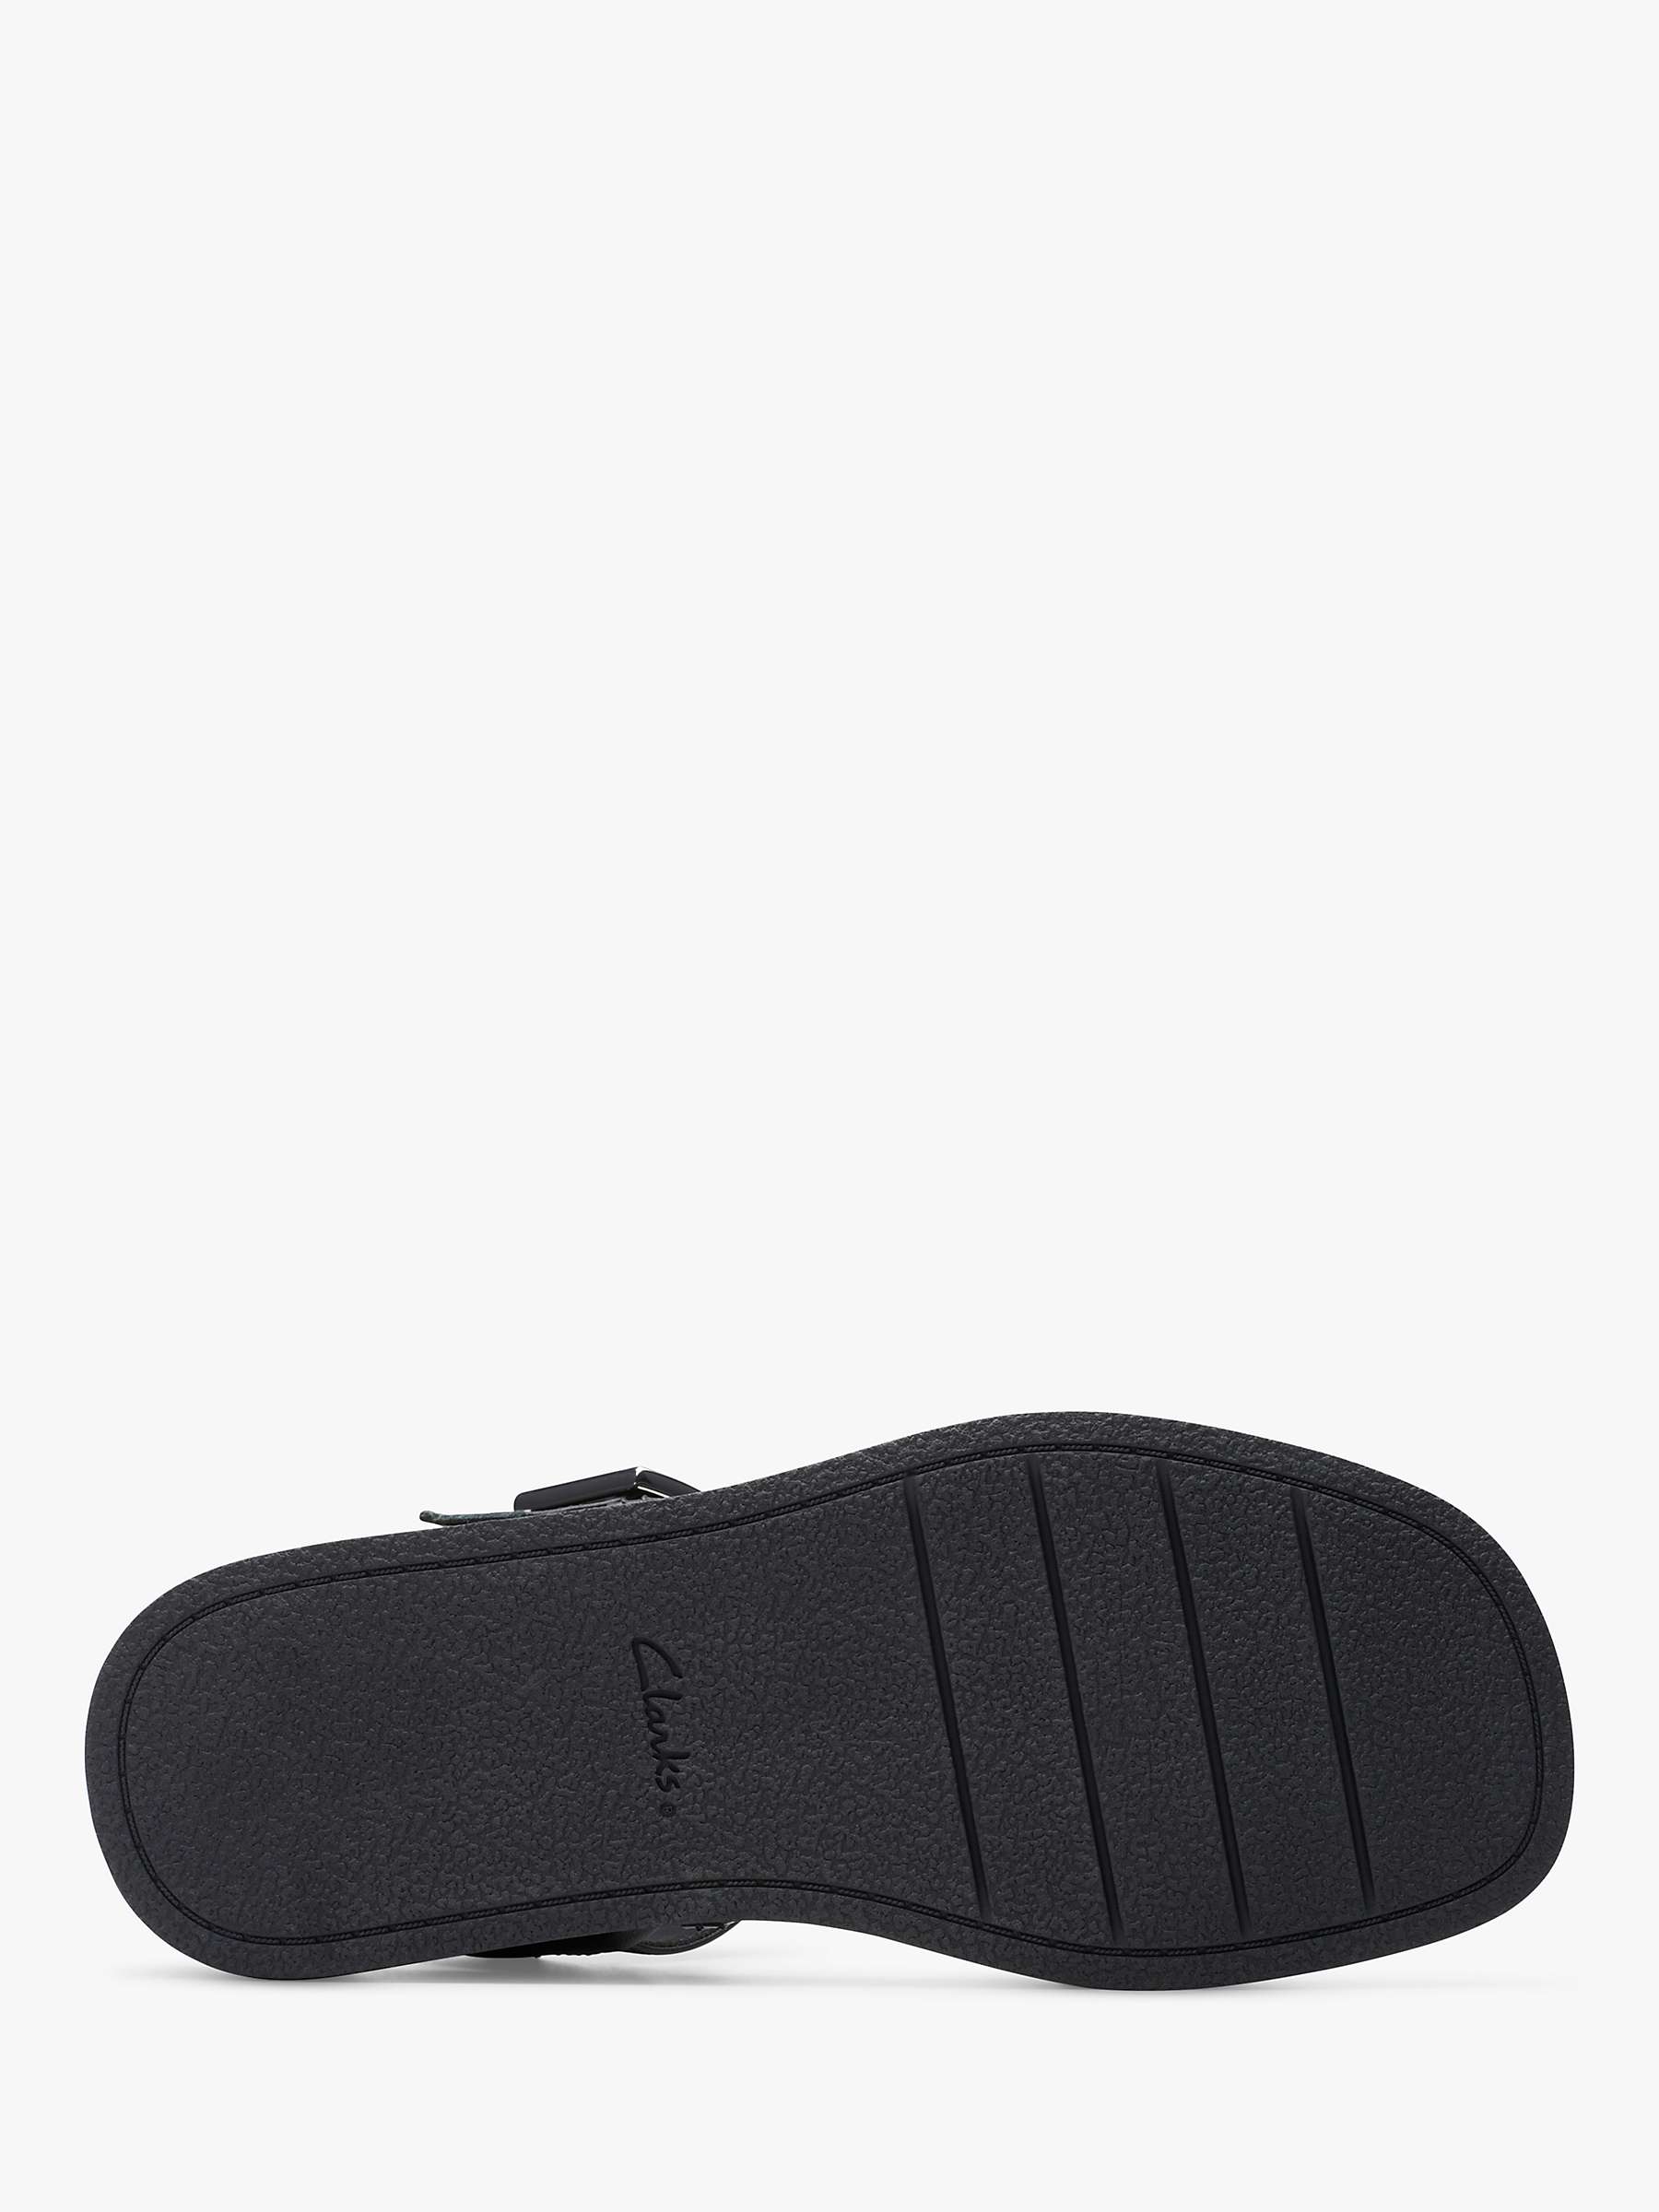 Buy Clarks Alda Leather Strap Sandals, Black Online at johnlewis.com